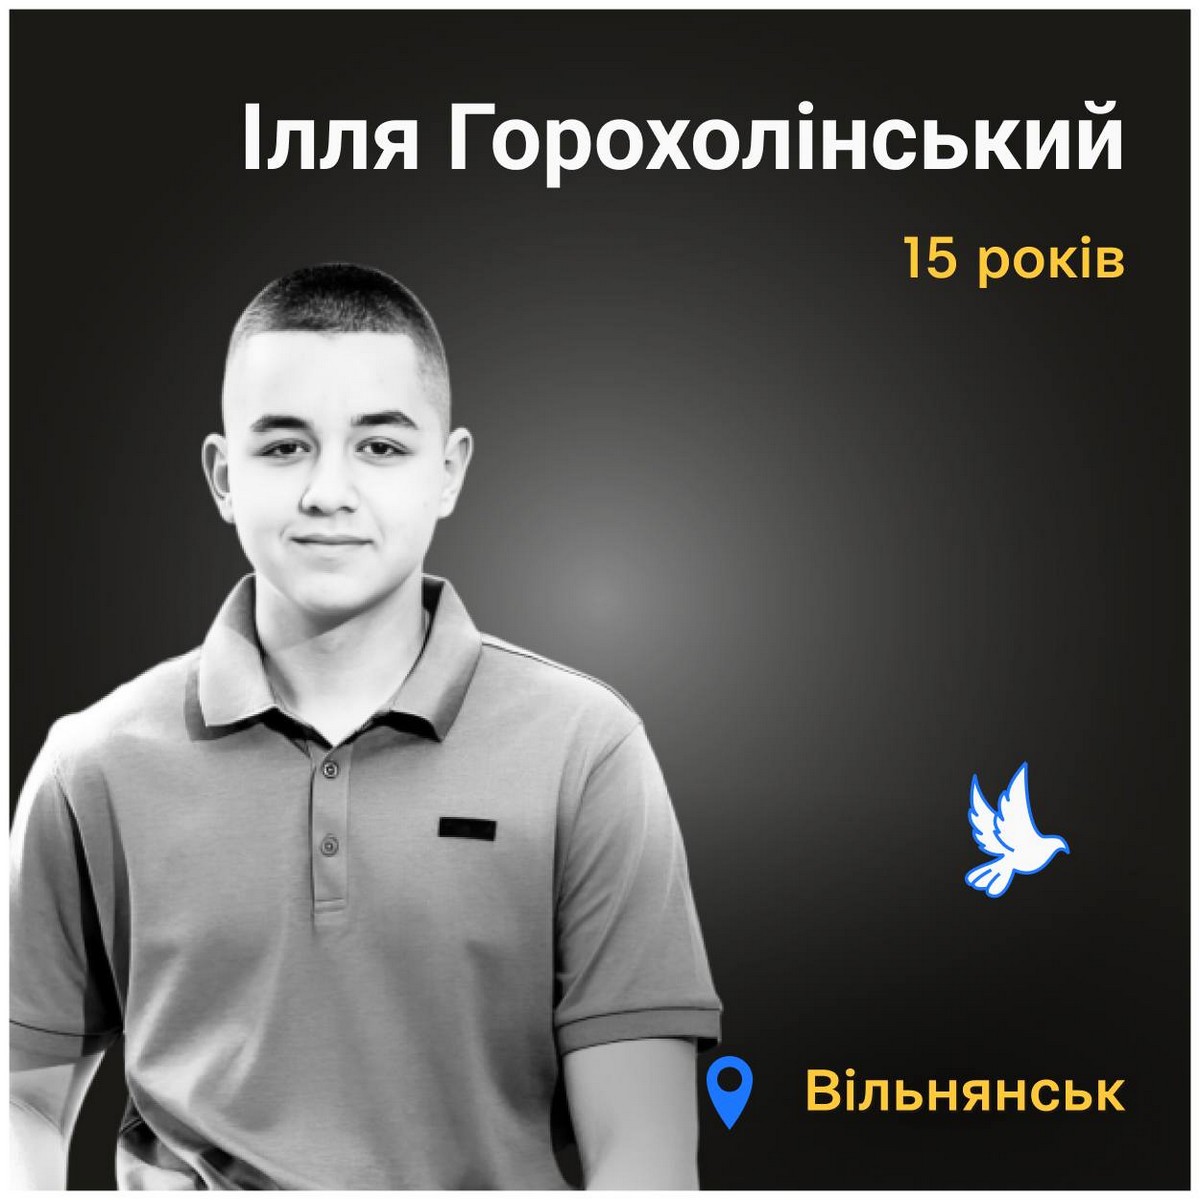 Меморіал: вбиті росією. Ілля Горохолінський, 15 років, Вільнянськ, червень